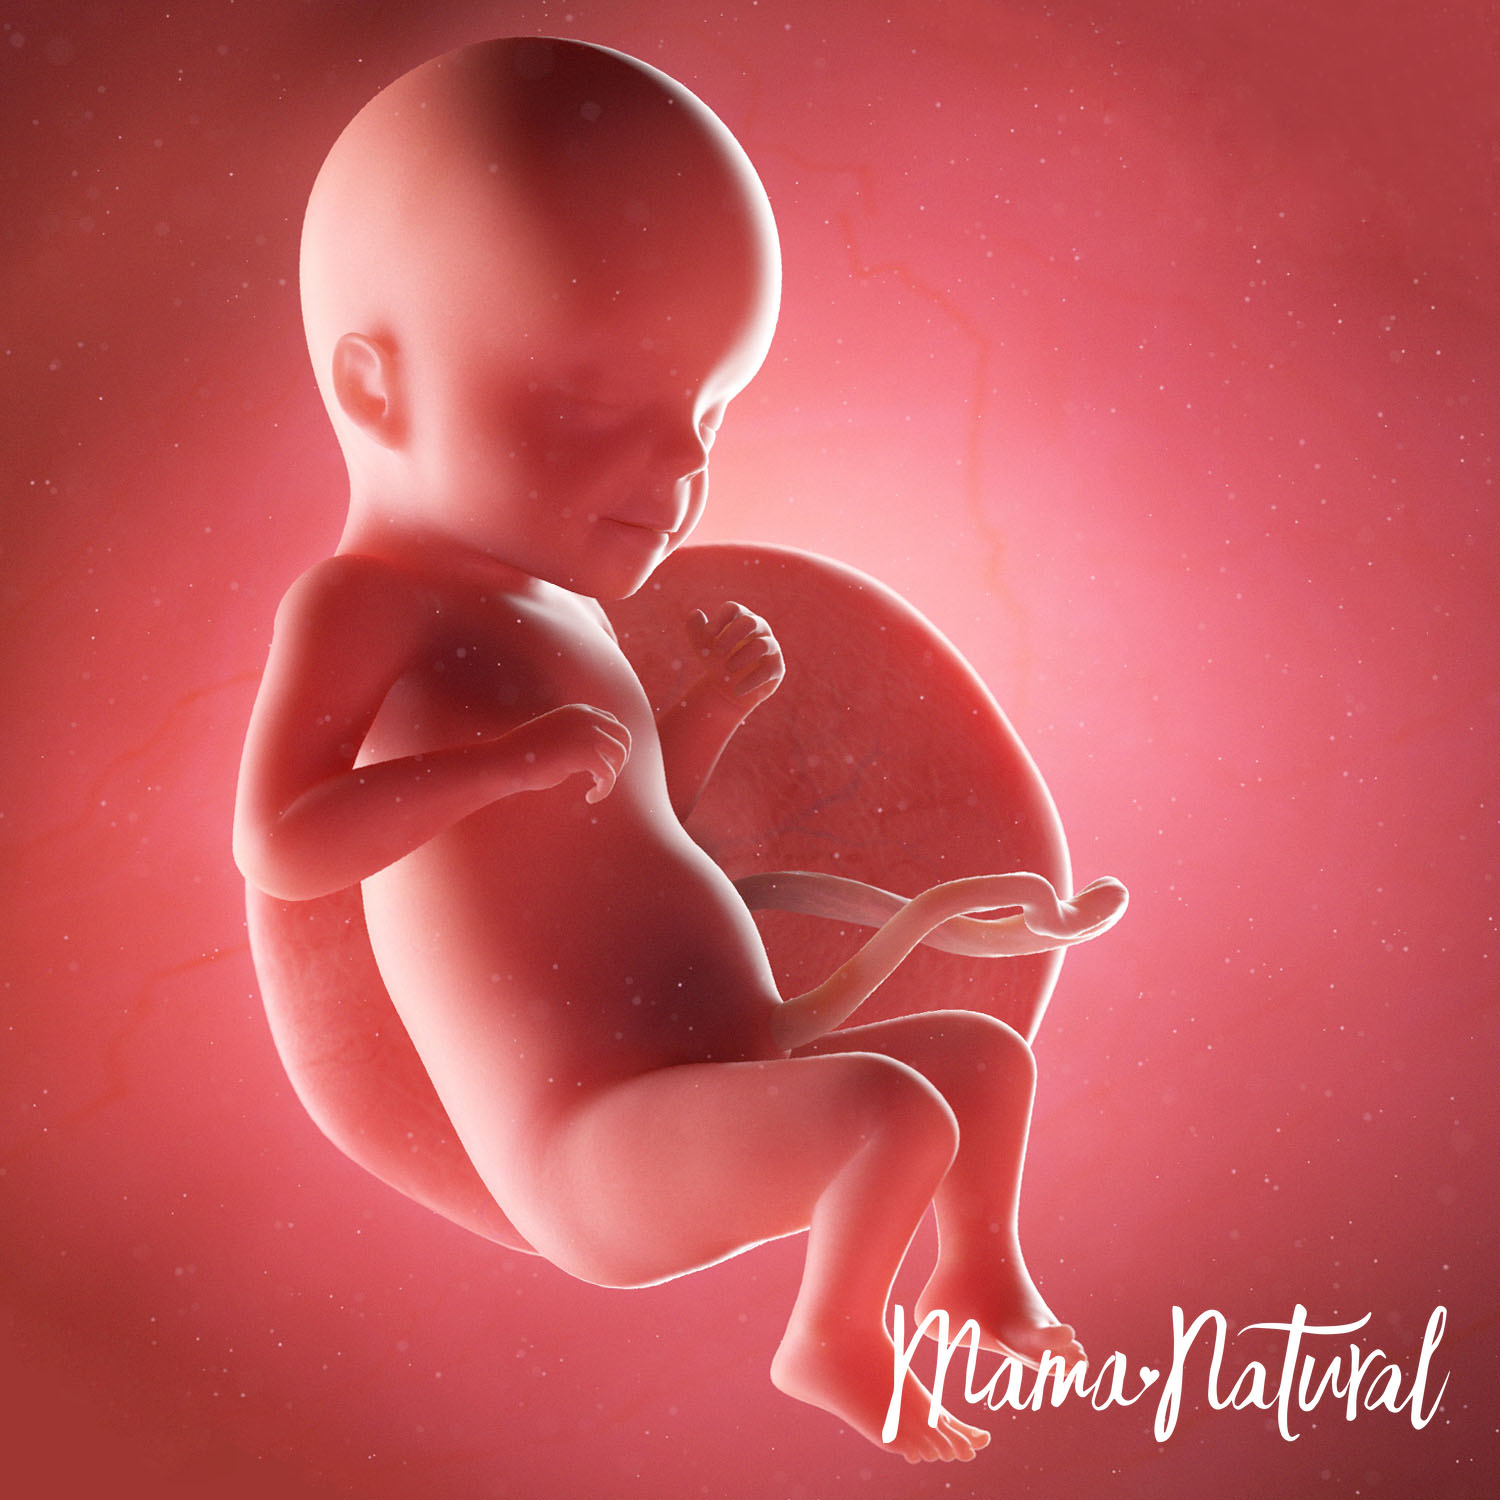 Baby at 26 Weeks Pregnant - Pregnancy Week By Week by Mama Natural